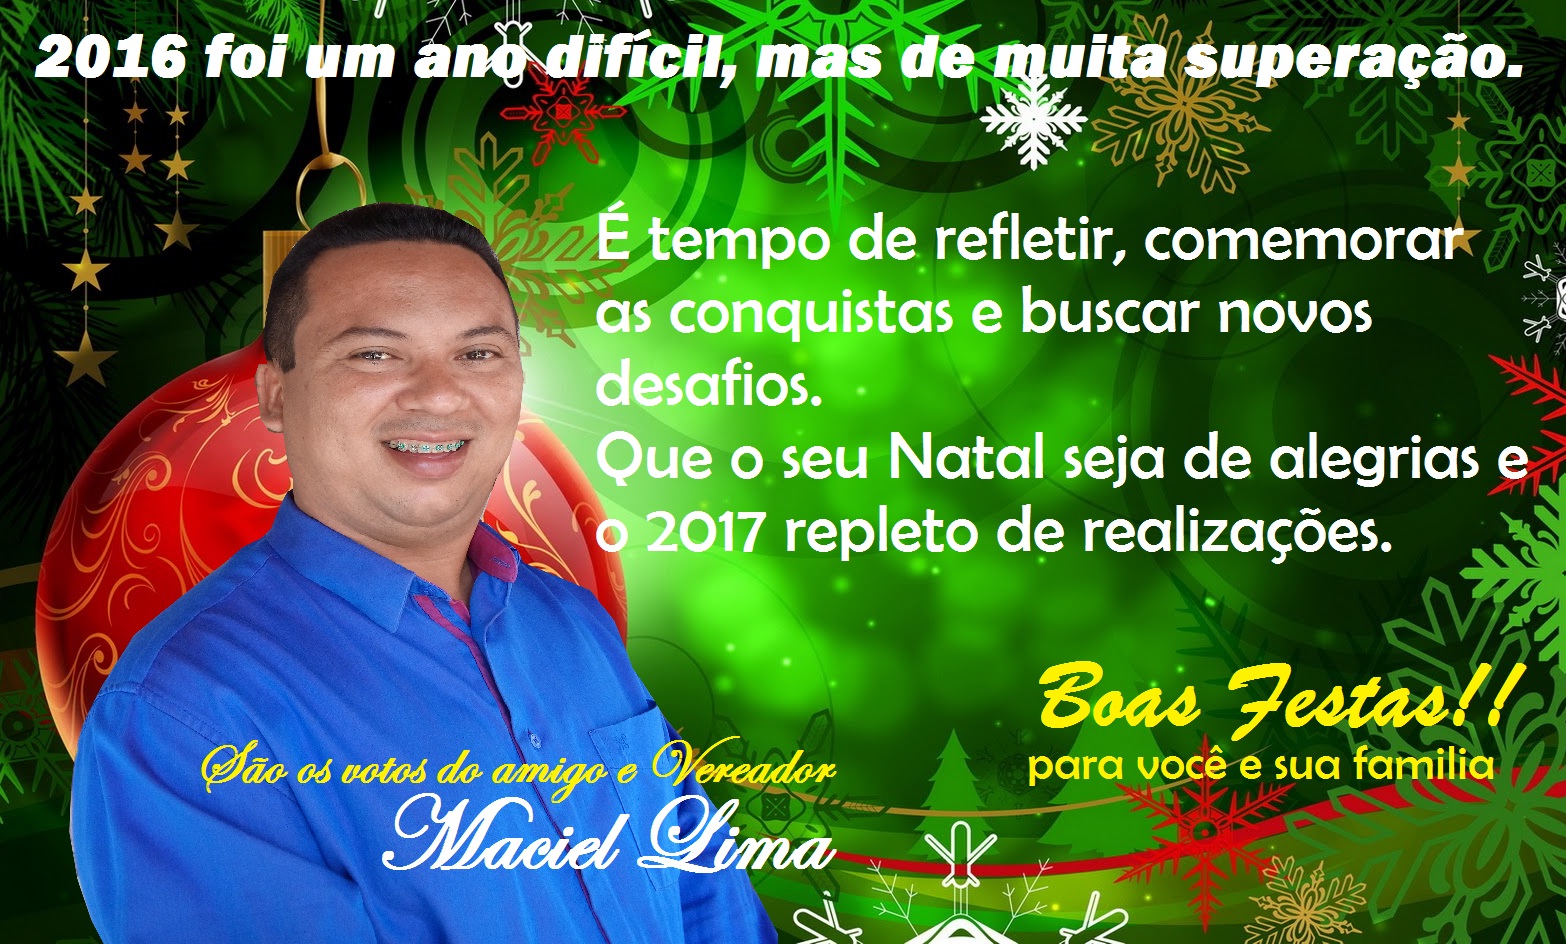 Mensagem de natal do vereador eleito, Maciel Lima